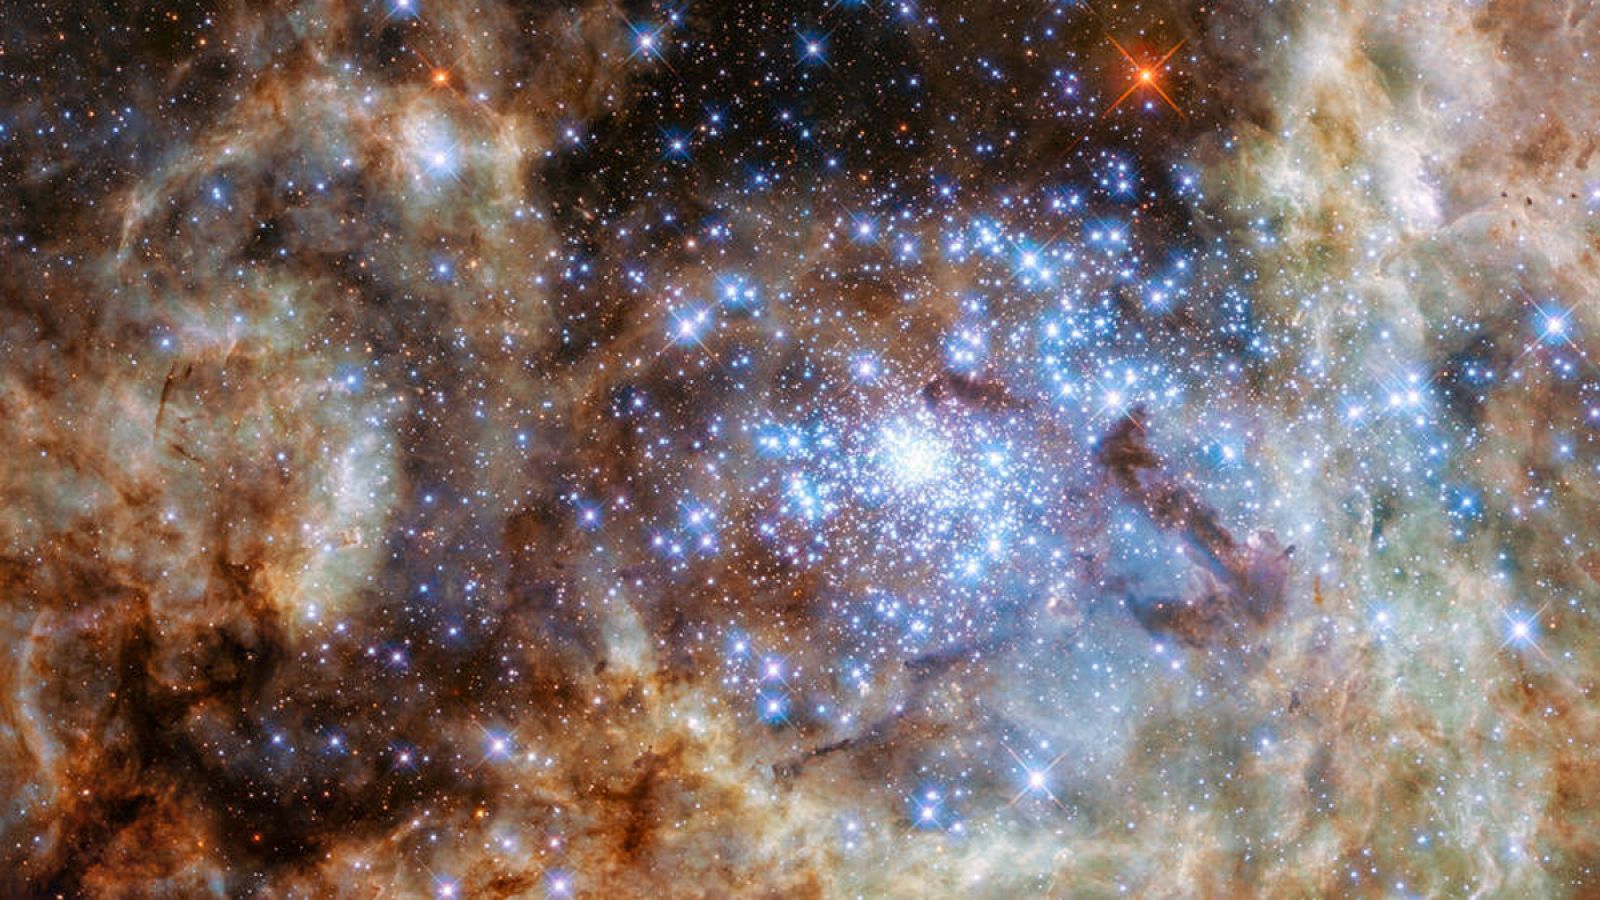 El "cluster" R136 se encuentra en la Nebulosa de la Tarántula, dentro de la Gran Nube de Magallanes.